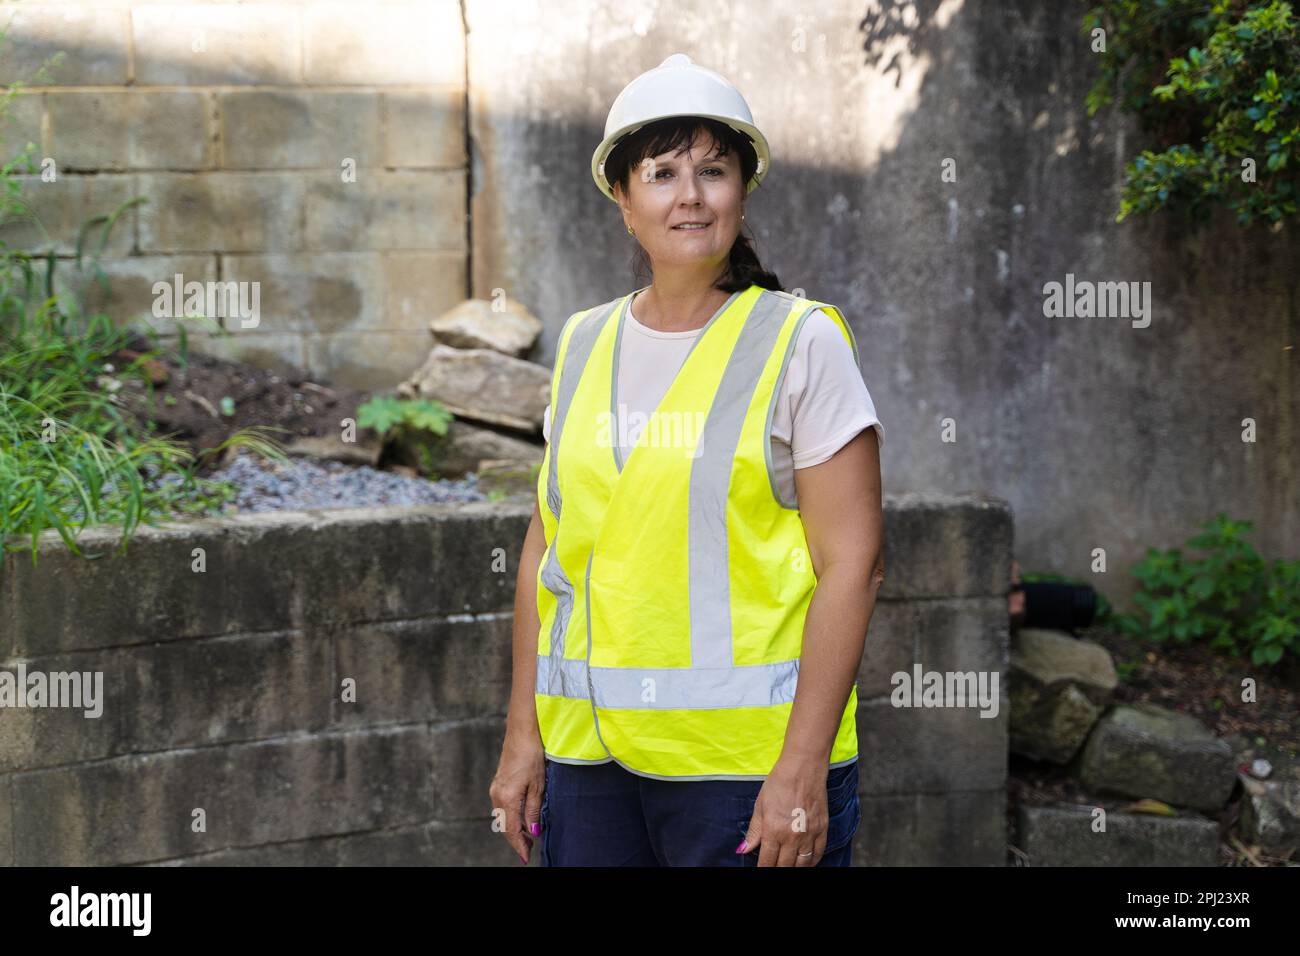 Mujer trabajadora industrial madura. Carretera, sitio de construcción, residuos Foto de stock